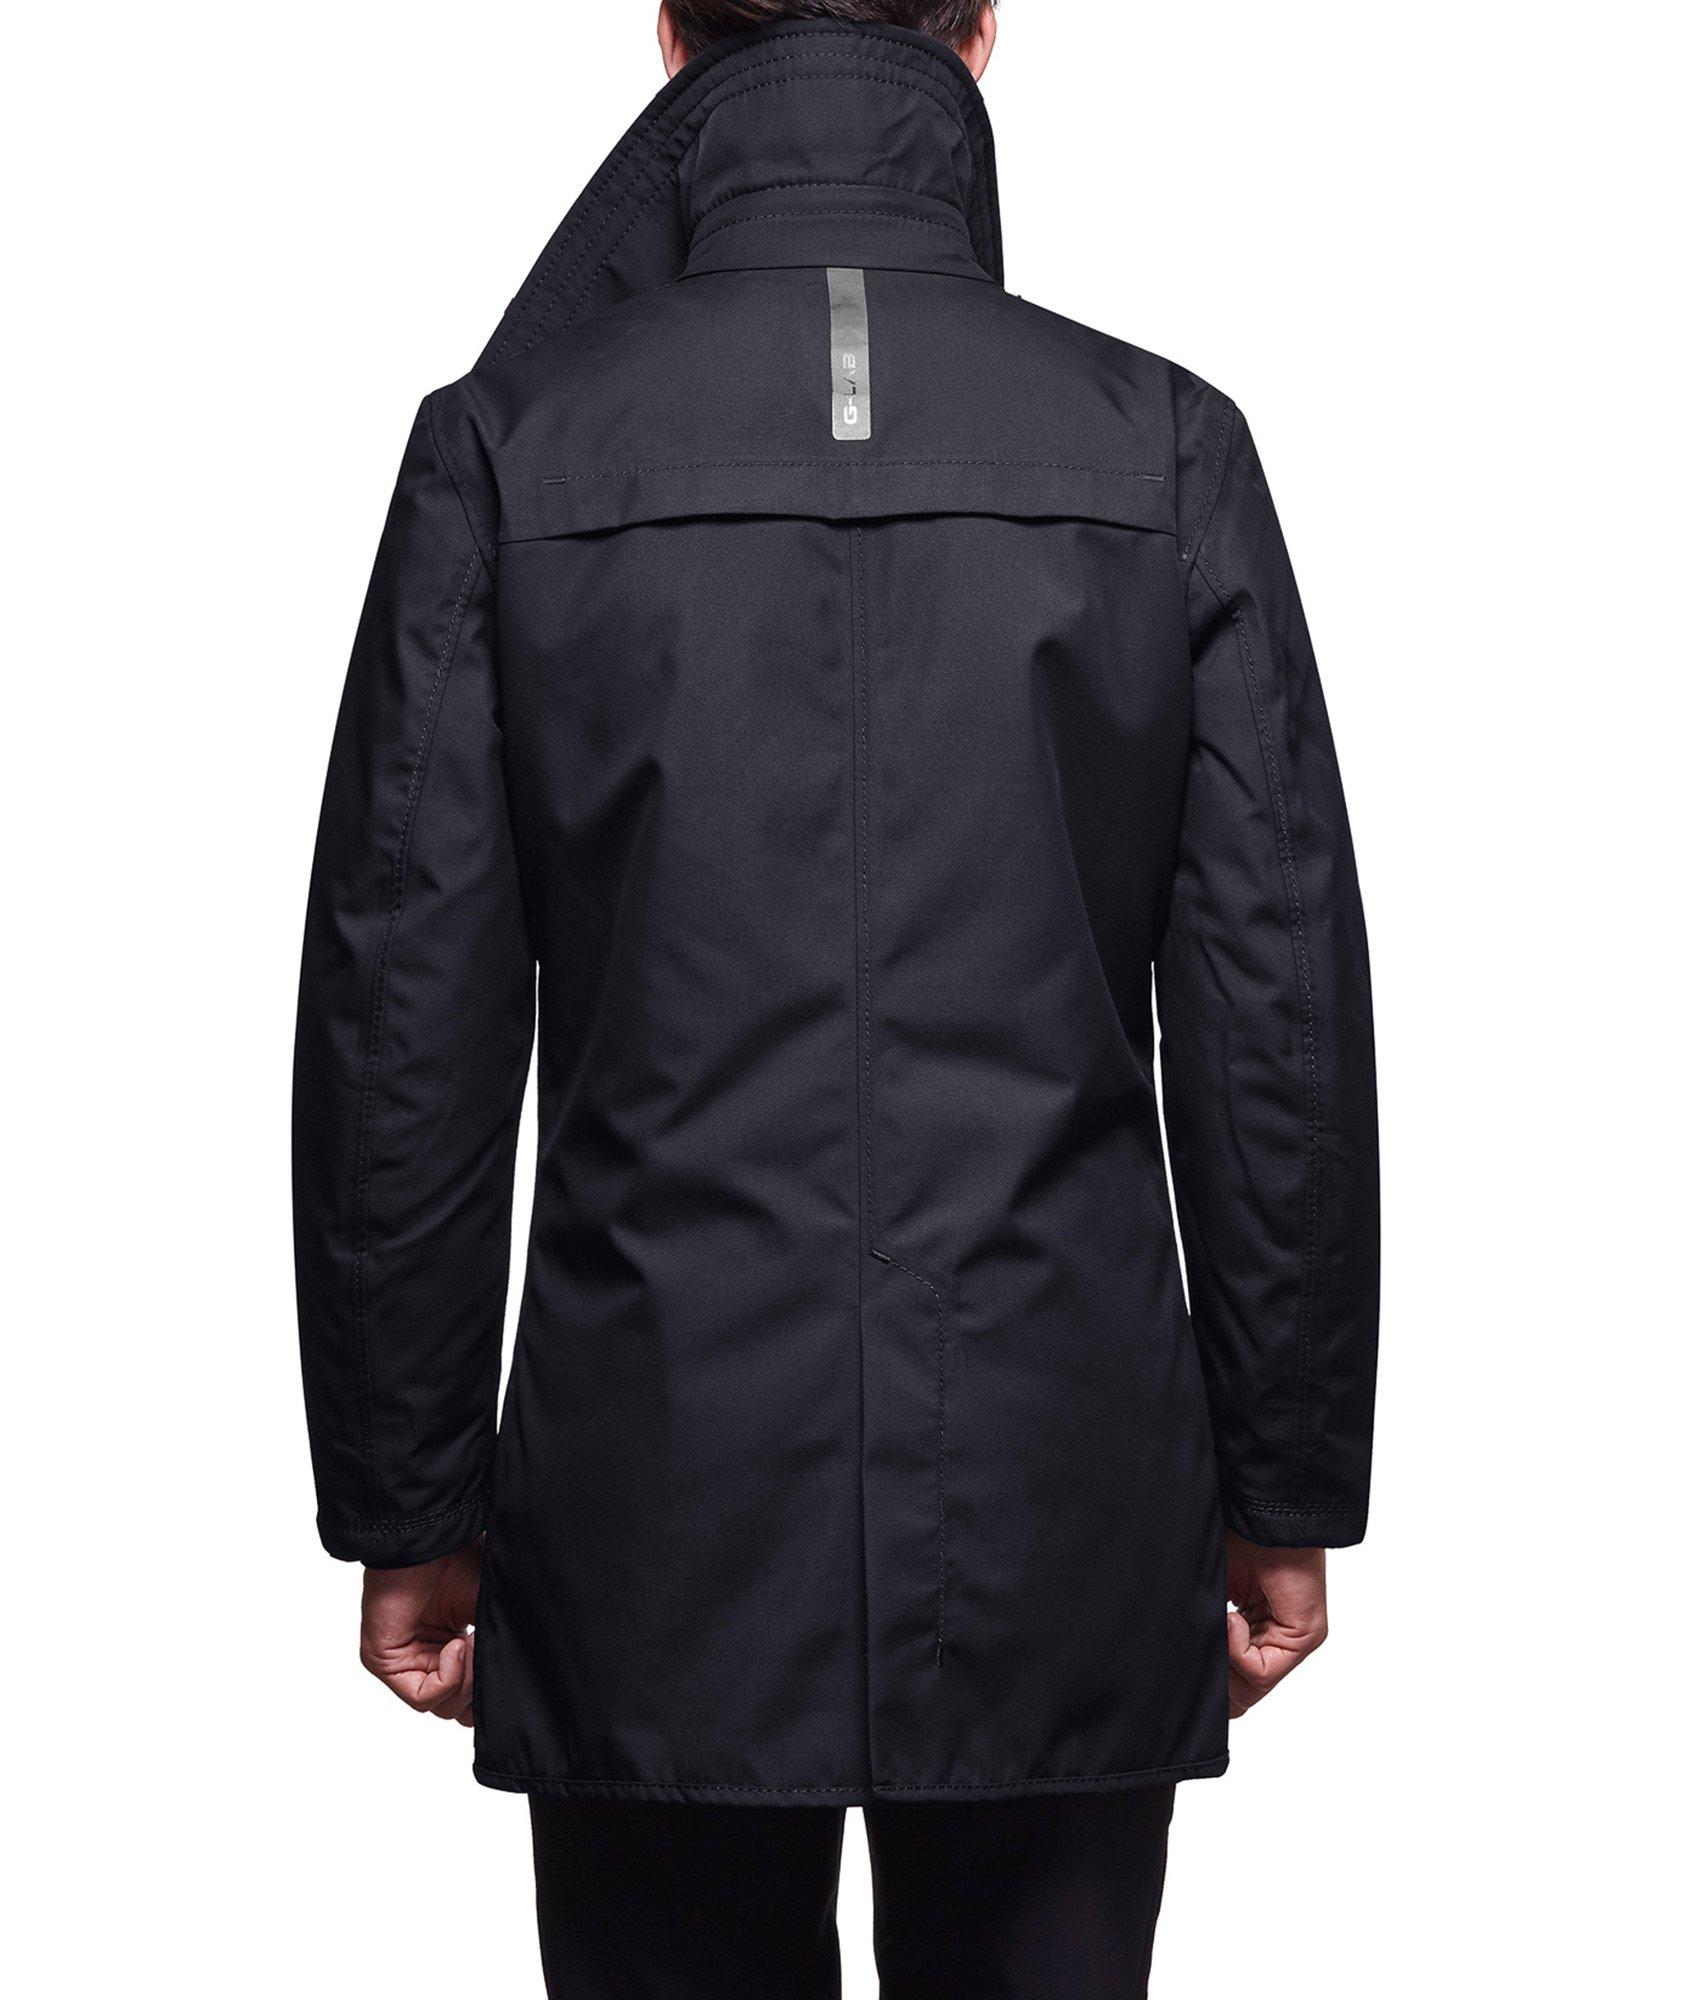 COSMO Waterproof Jacket image 1